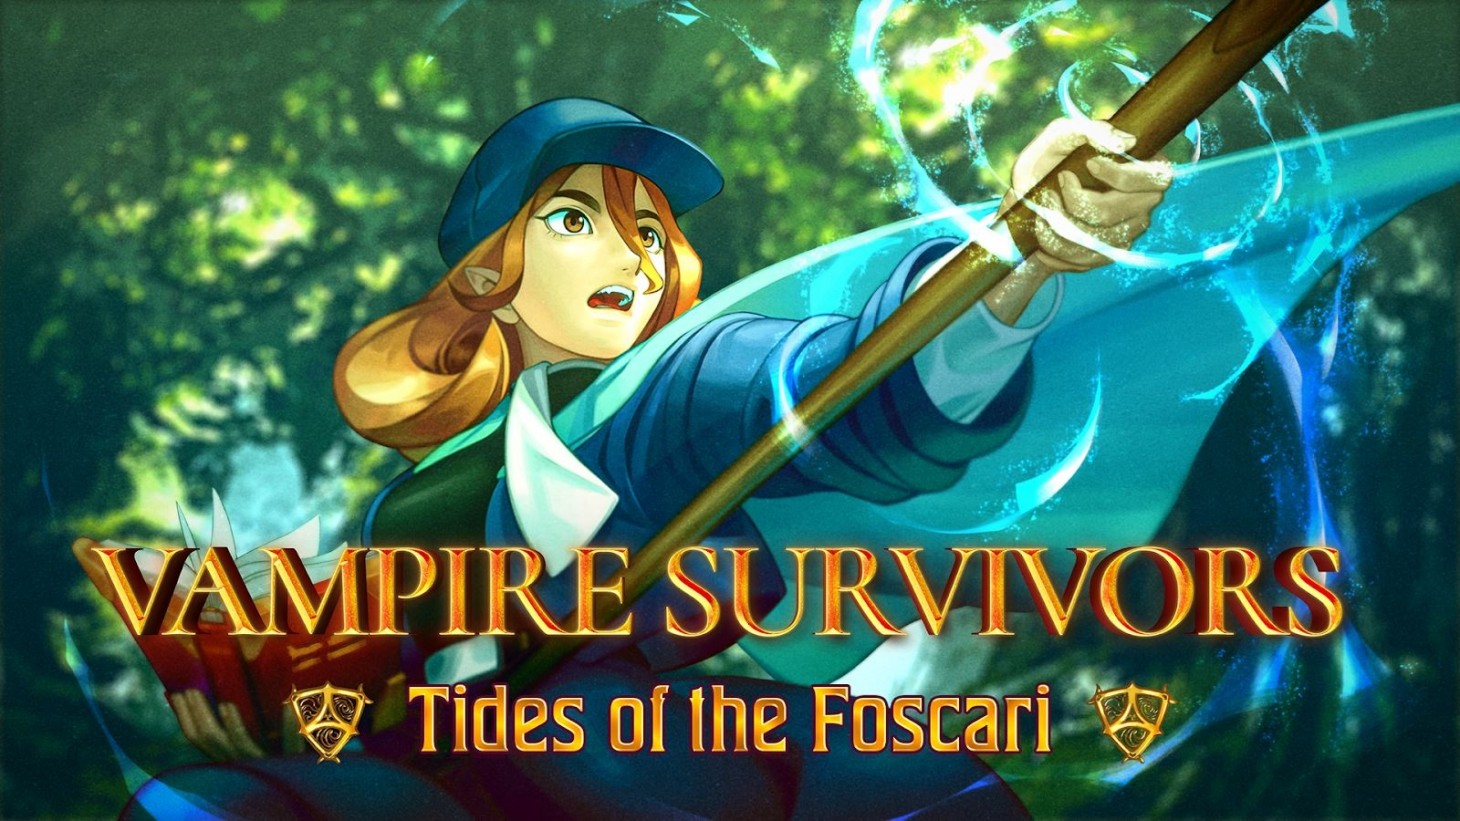 Vampire Survivors erhält nächsten Monat Tides of the Foscari DLC mit Fantasy-Motiven